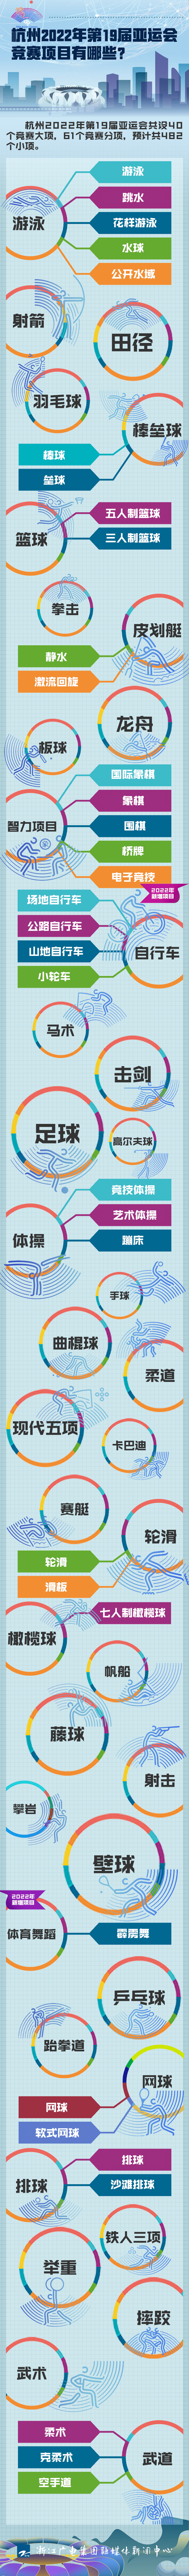 电子竞技、霹雳舞被列为2022年杭州亚运会正式竞赛项目